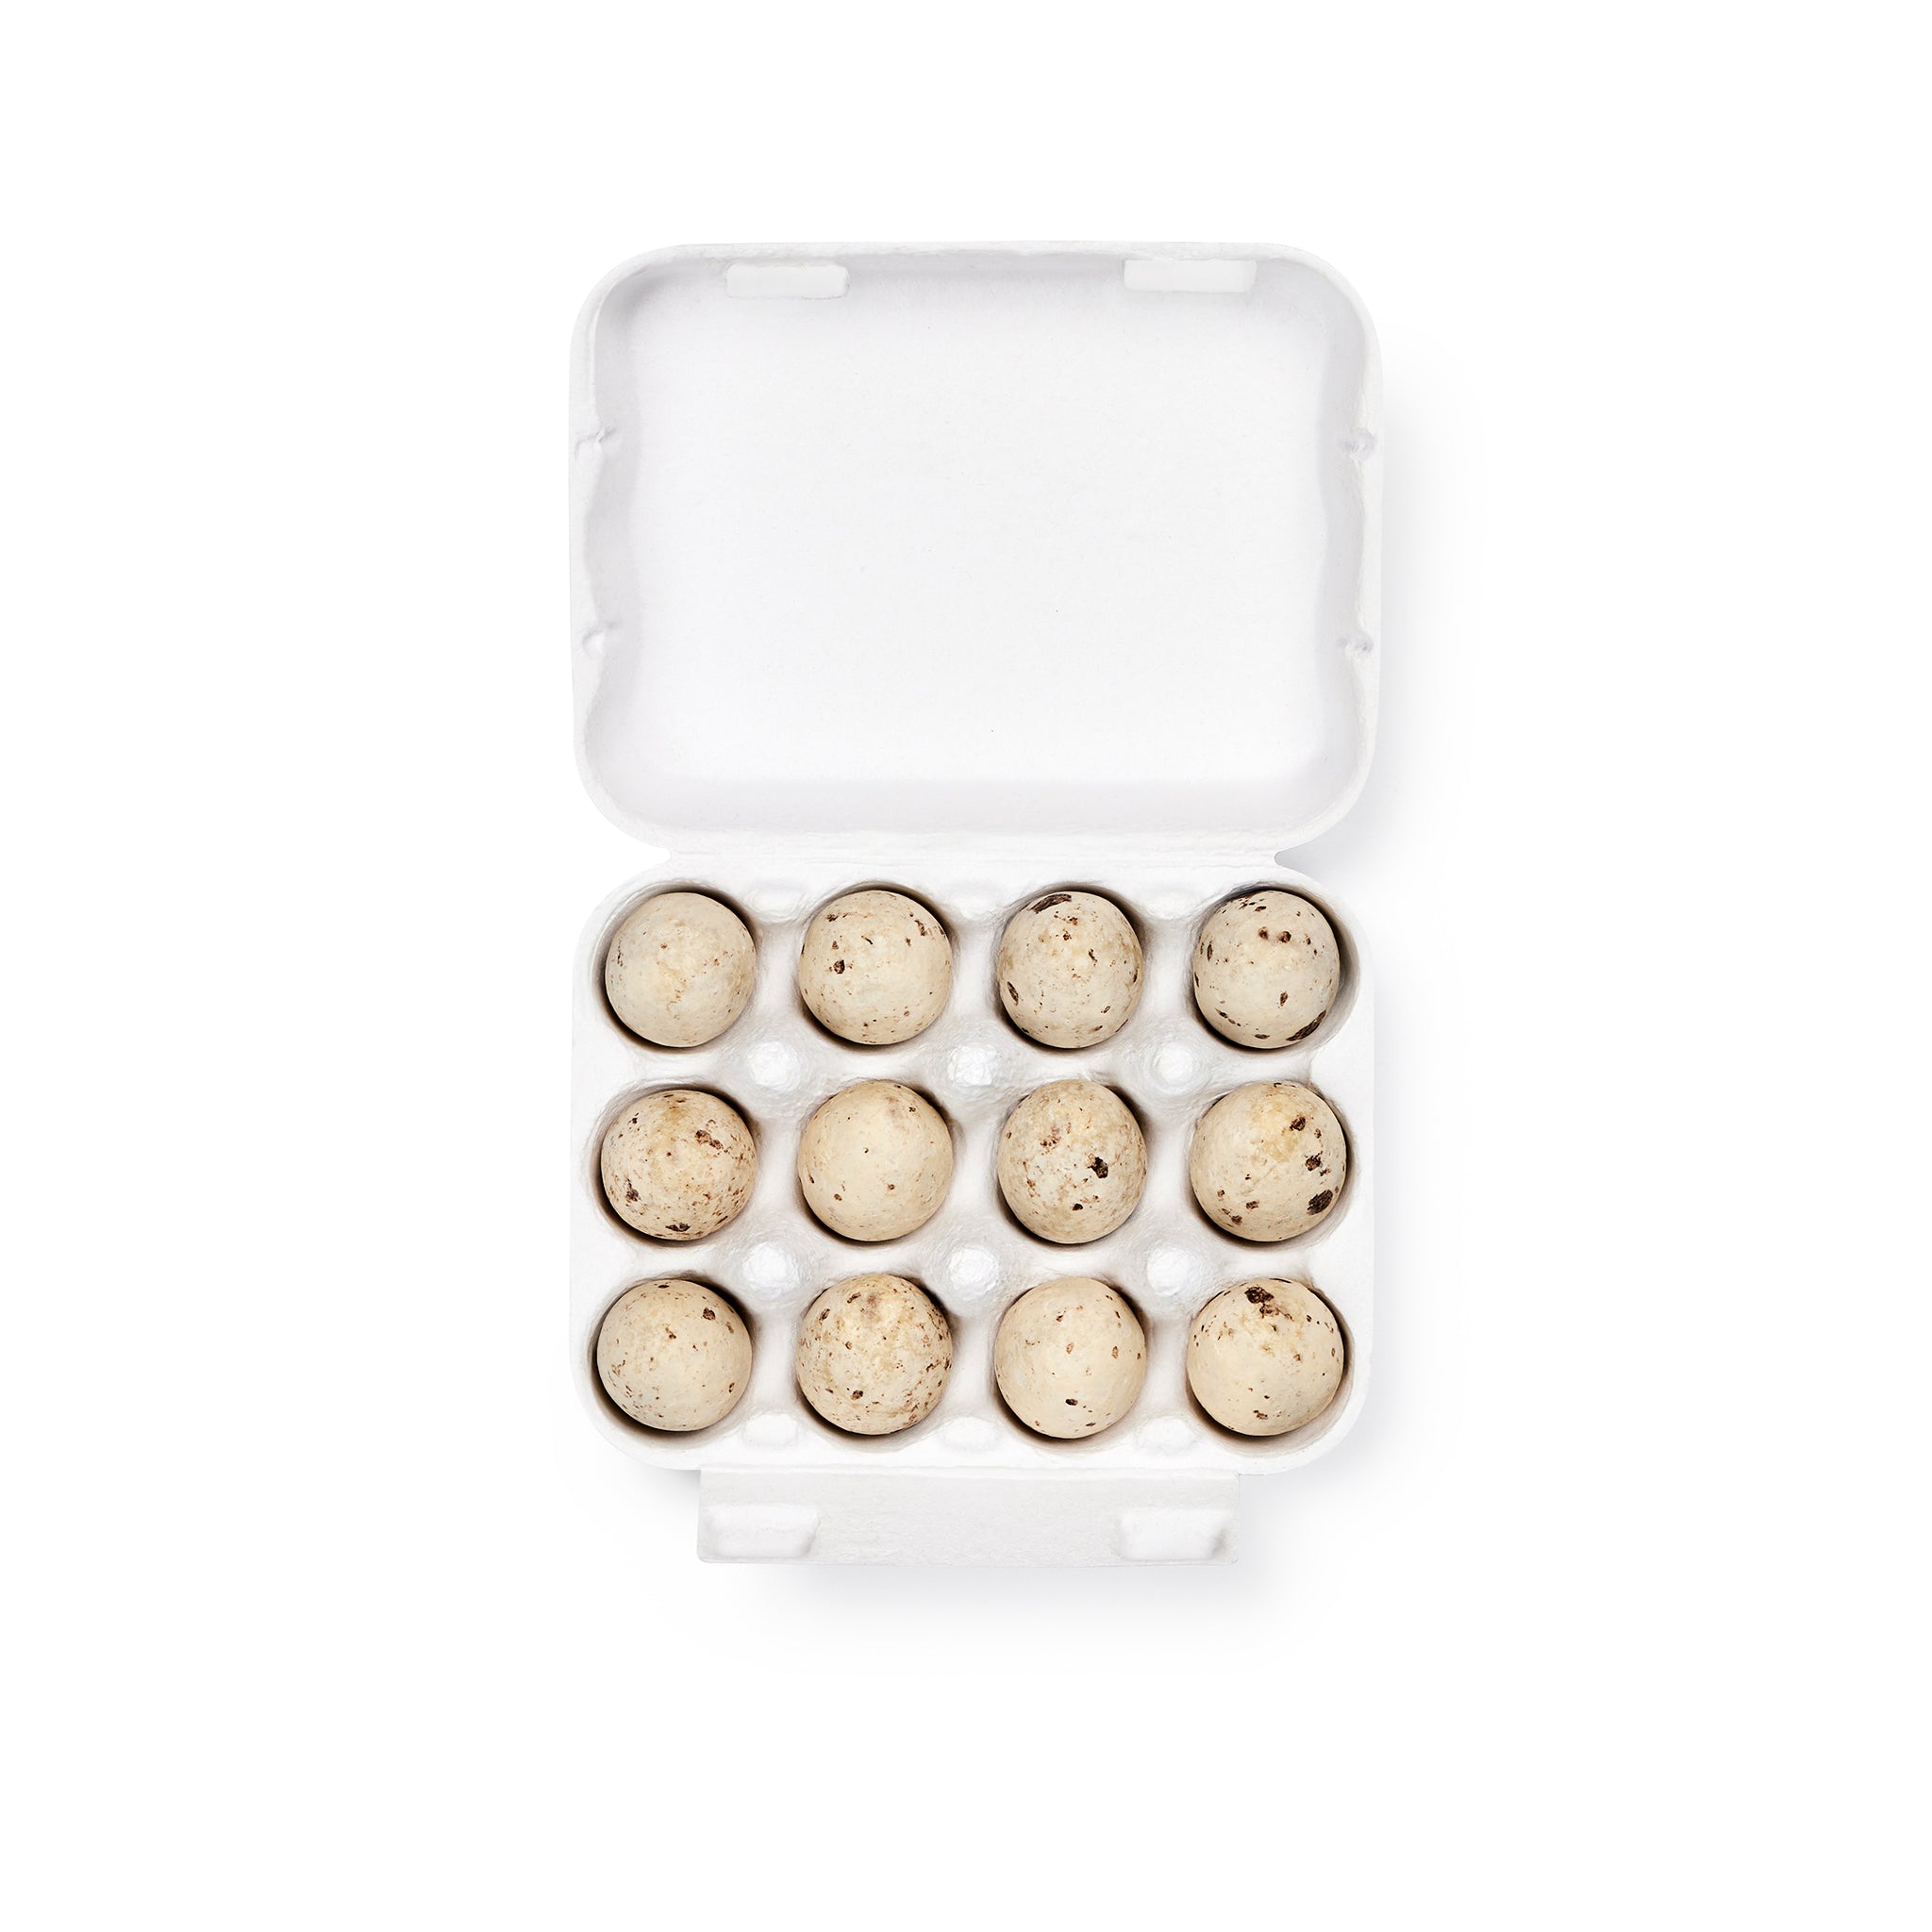 A Dozen Speckled Eggs, 12 Pieces | 120g